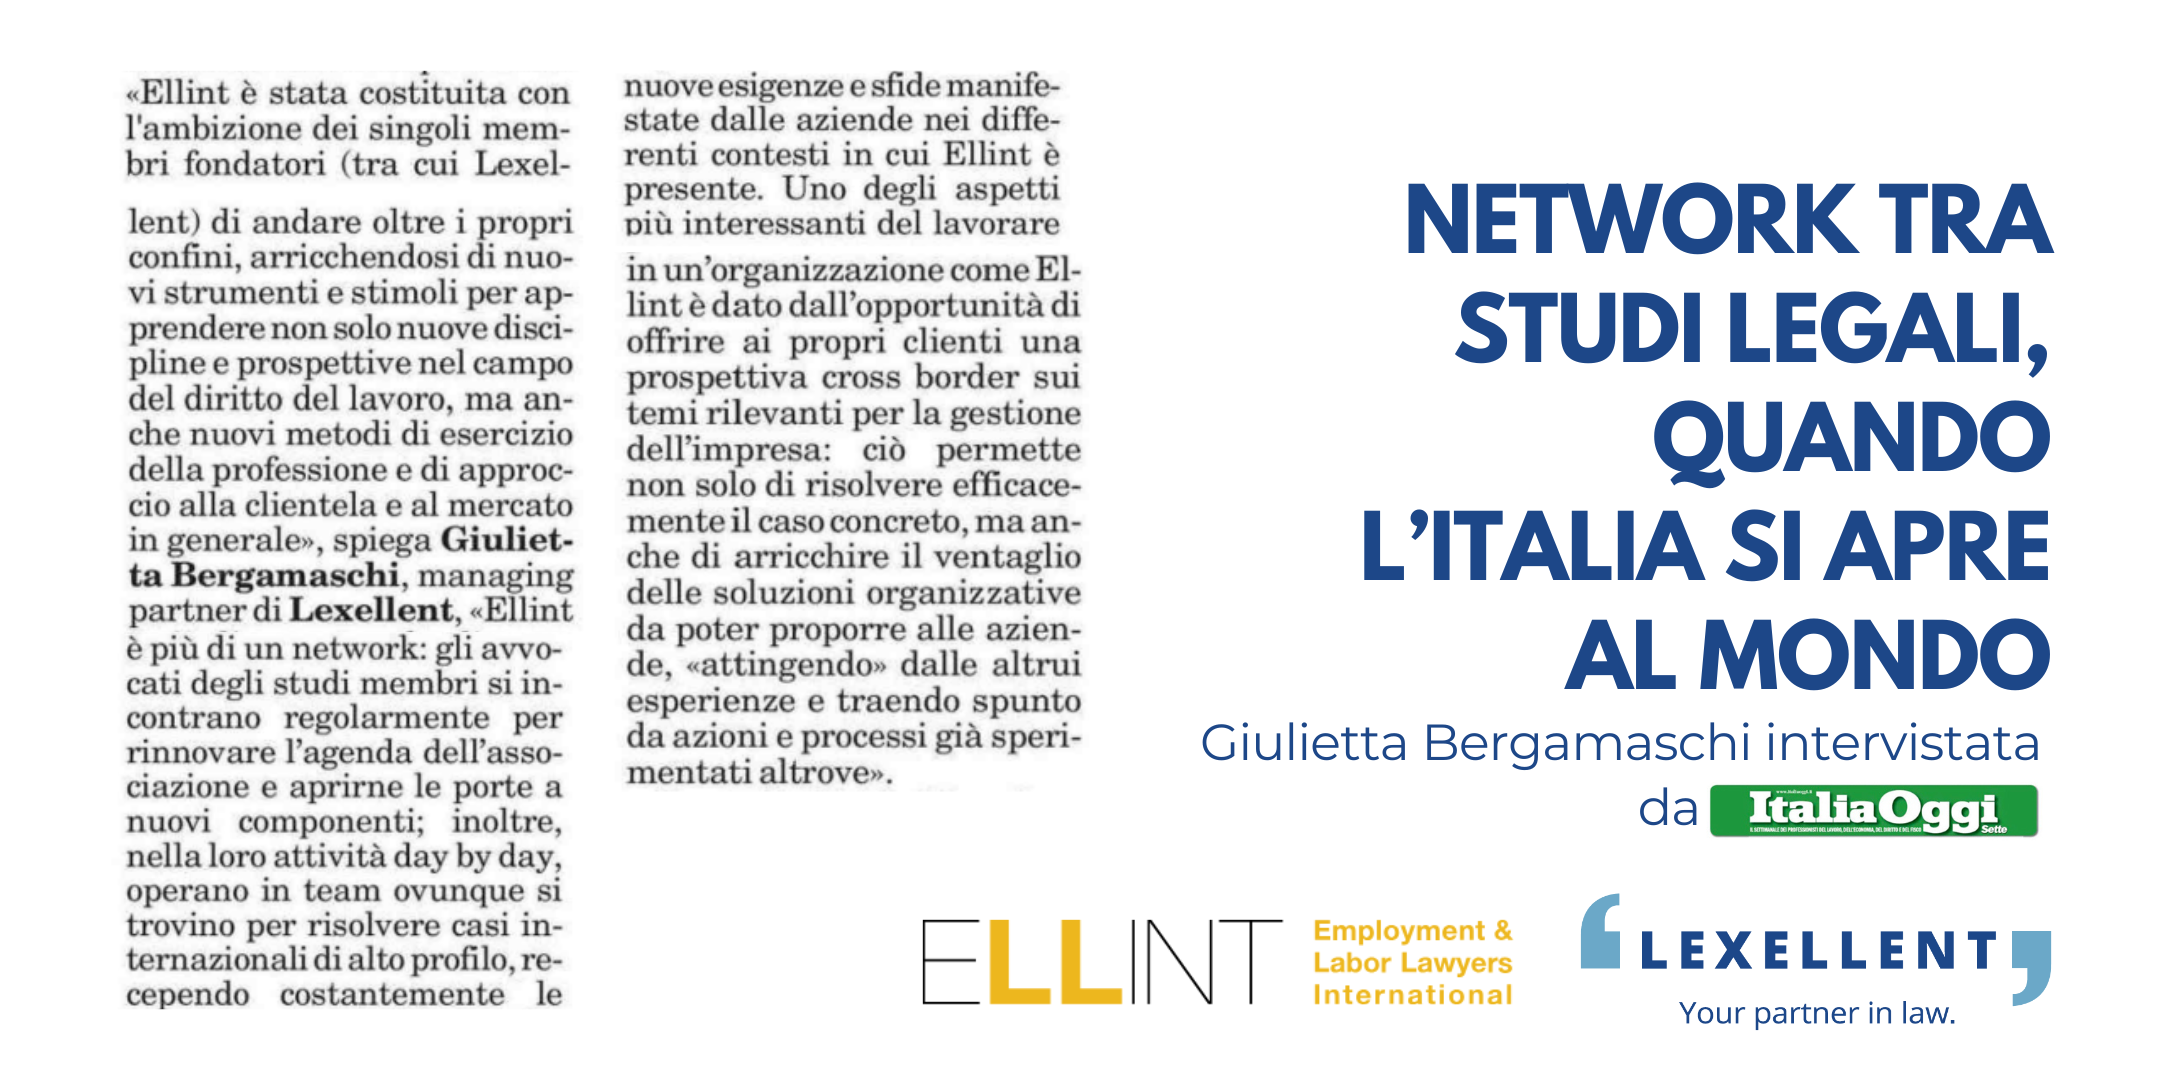 Network tra studi legali, quando l’Italia si apre al mondo – Giulietta Bergamaschi intervistata da ItaliaOggi